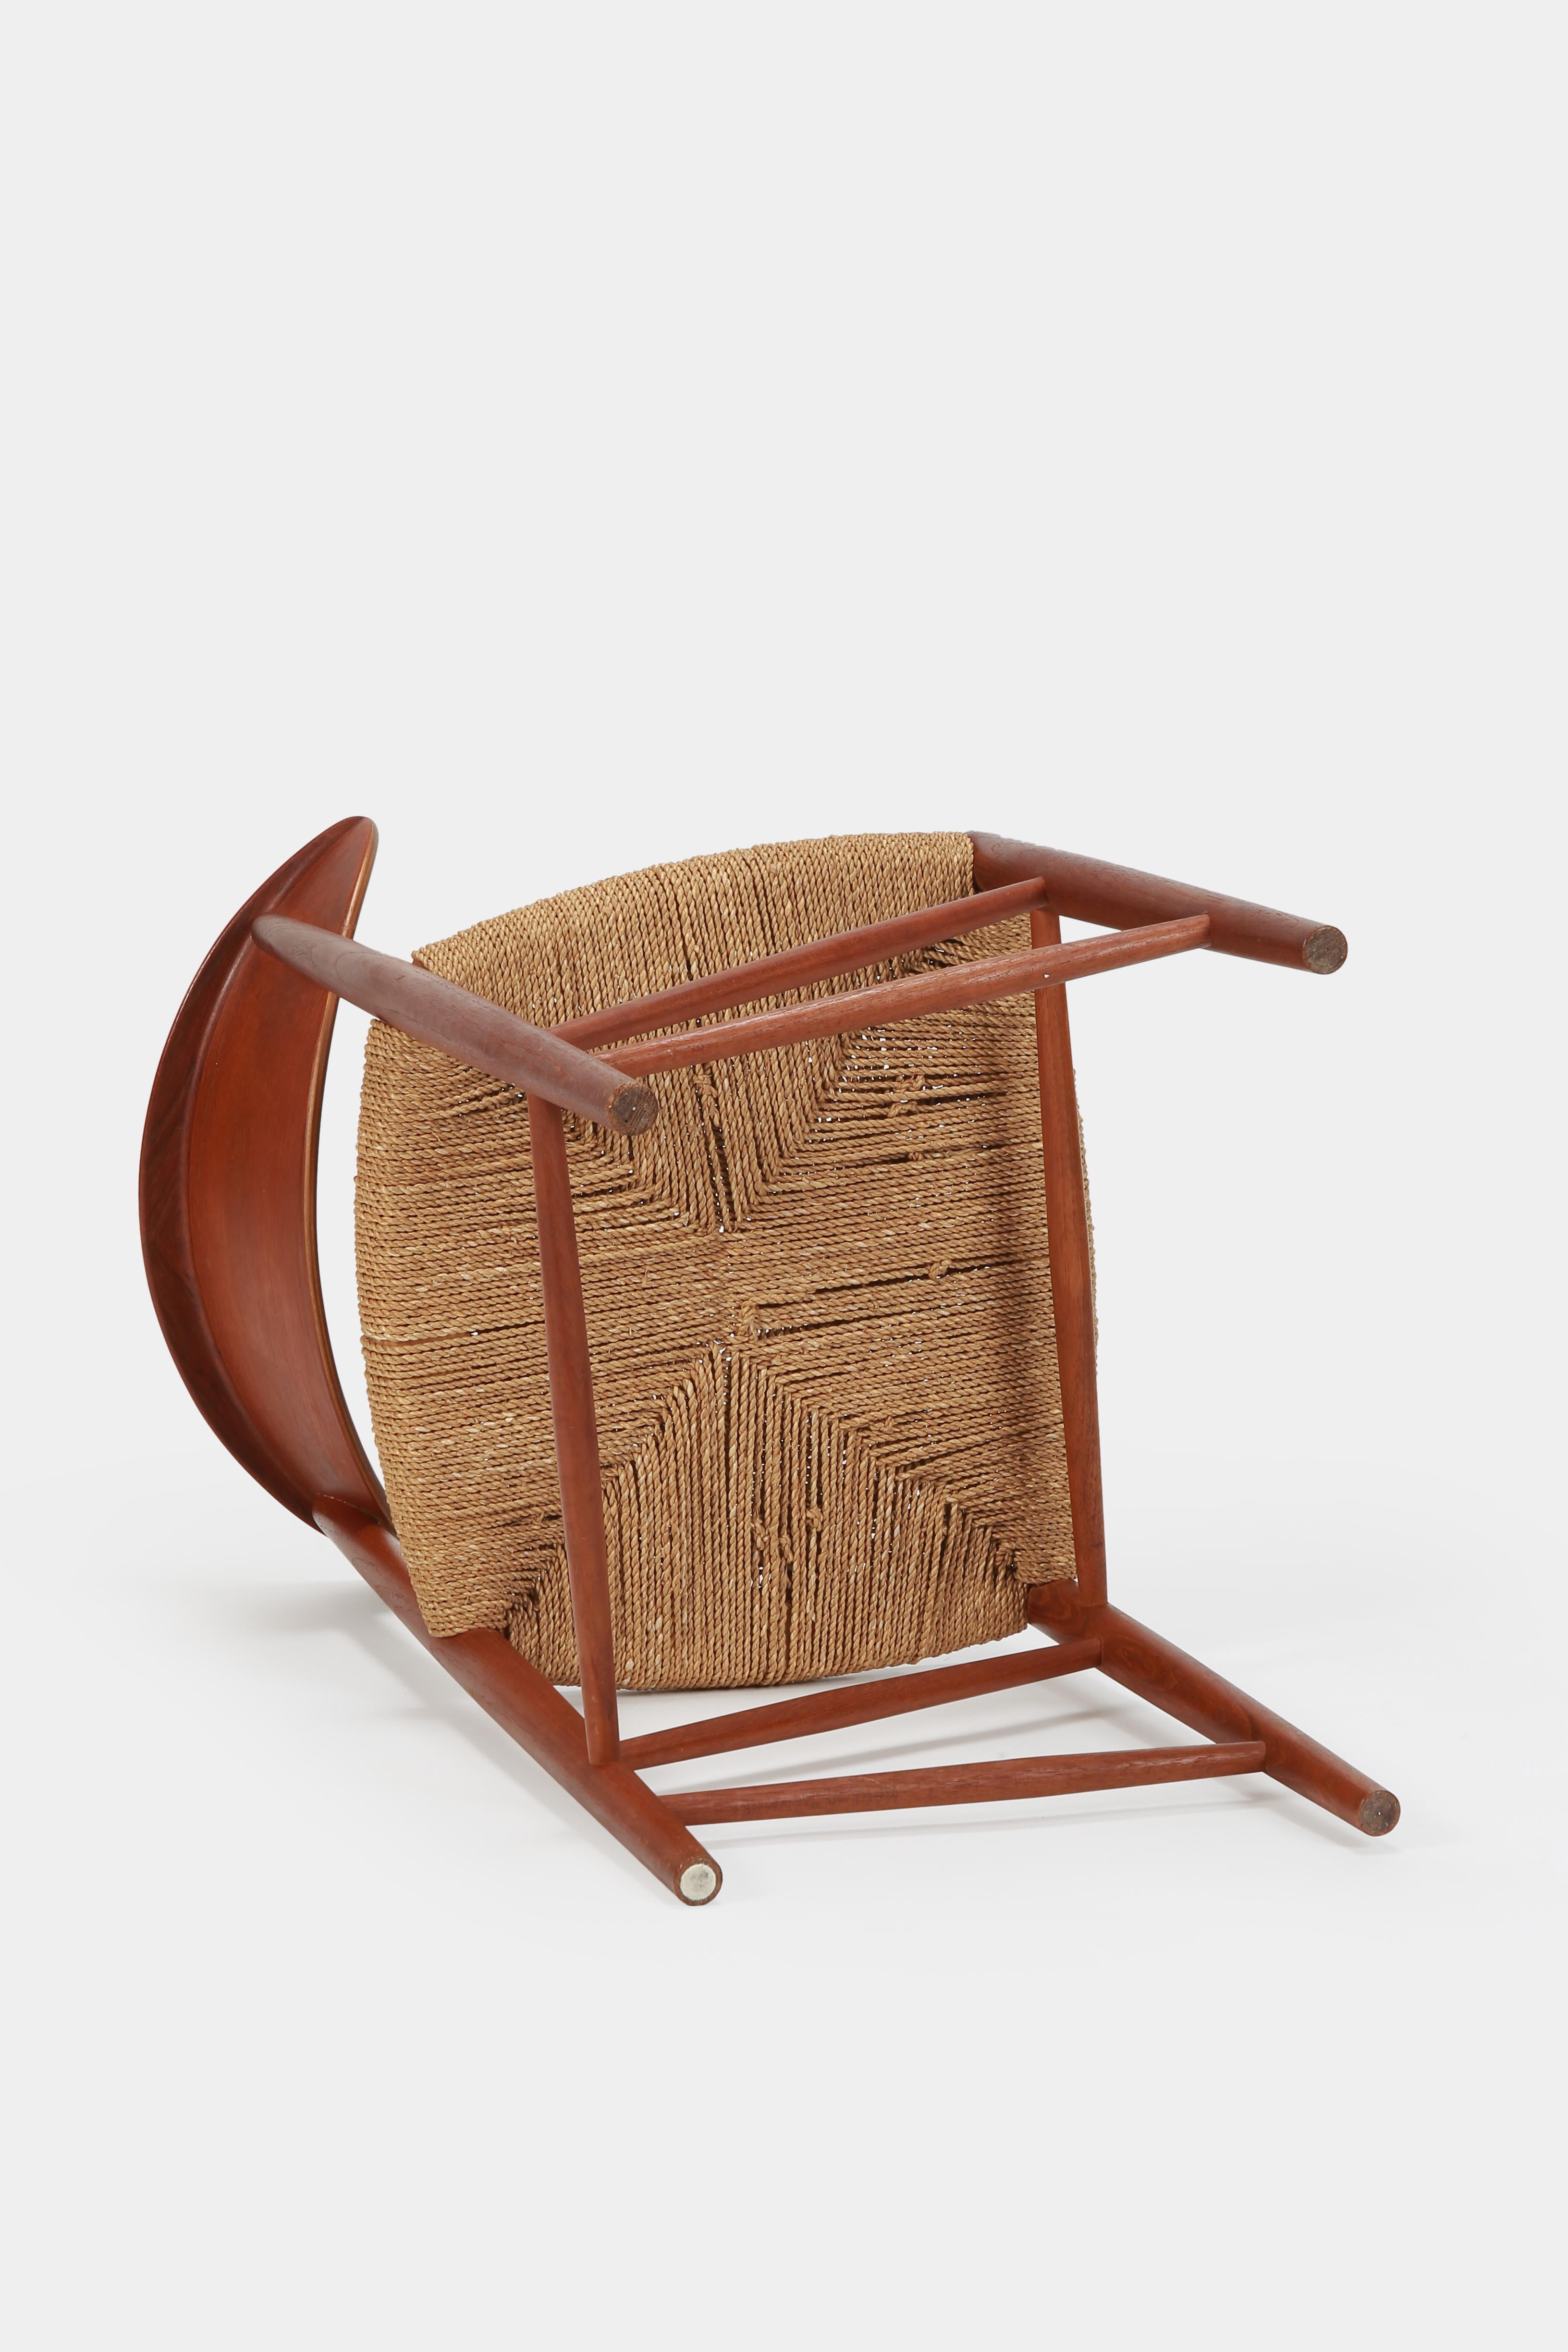 Hvidt & Mølgaard Single Chair Teak, 1950s For Sale 10